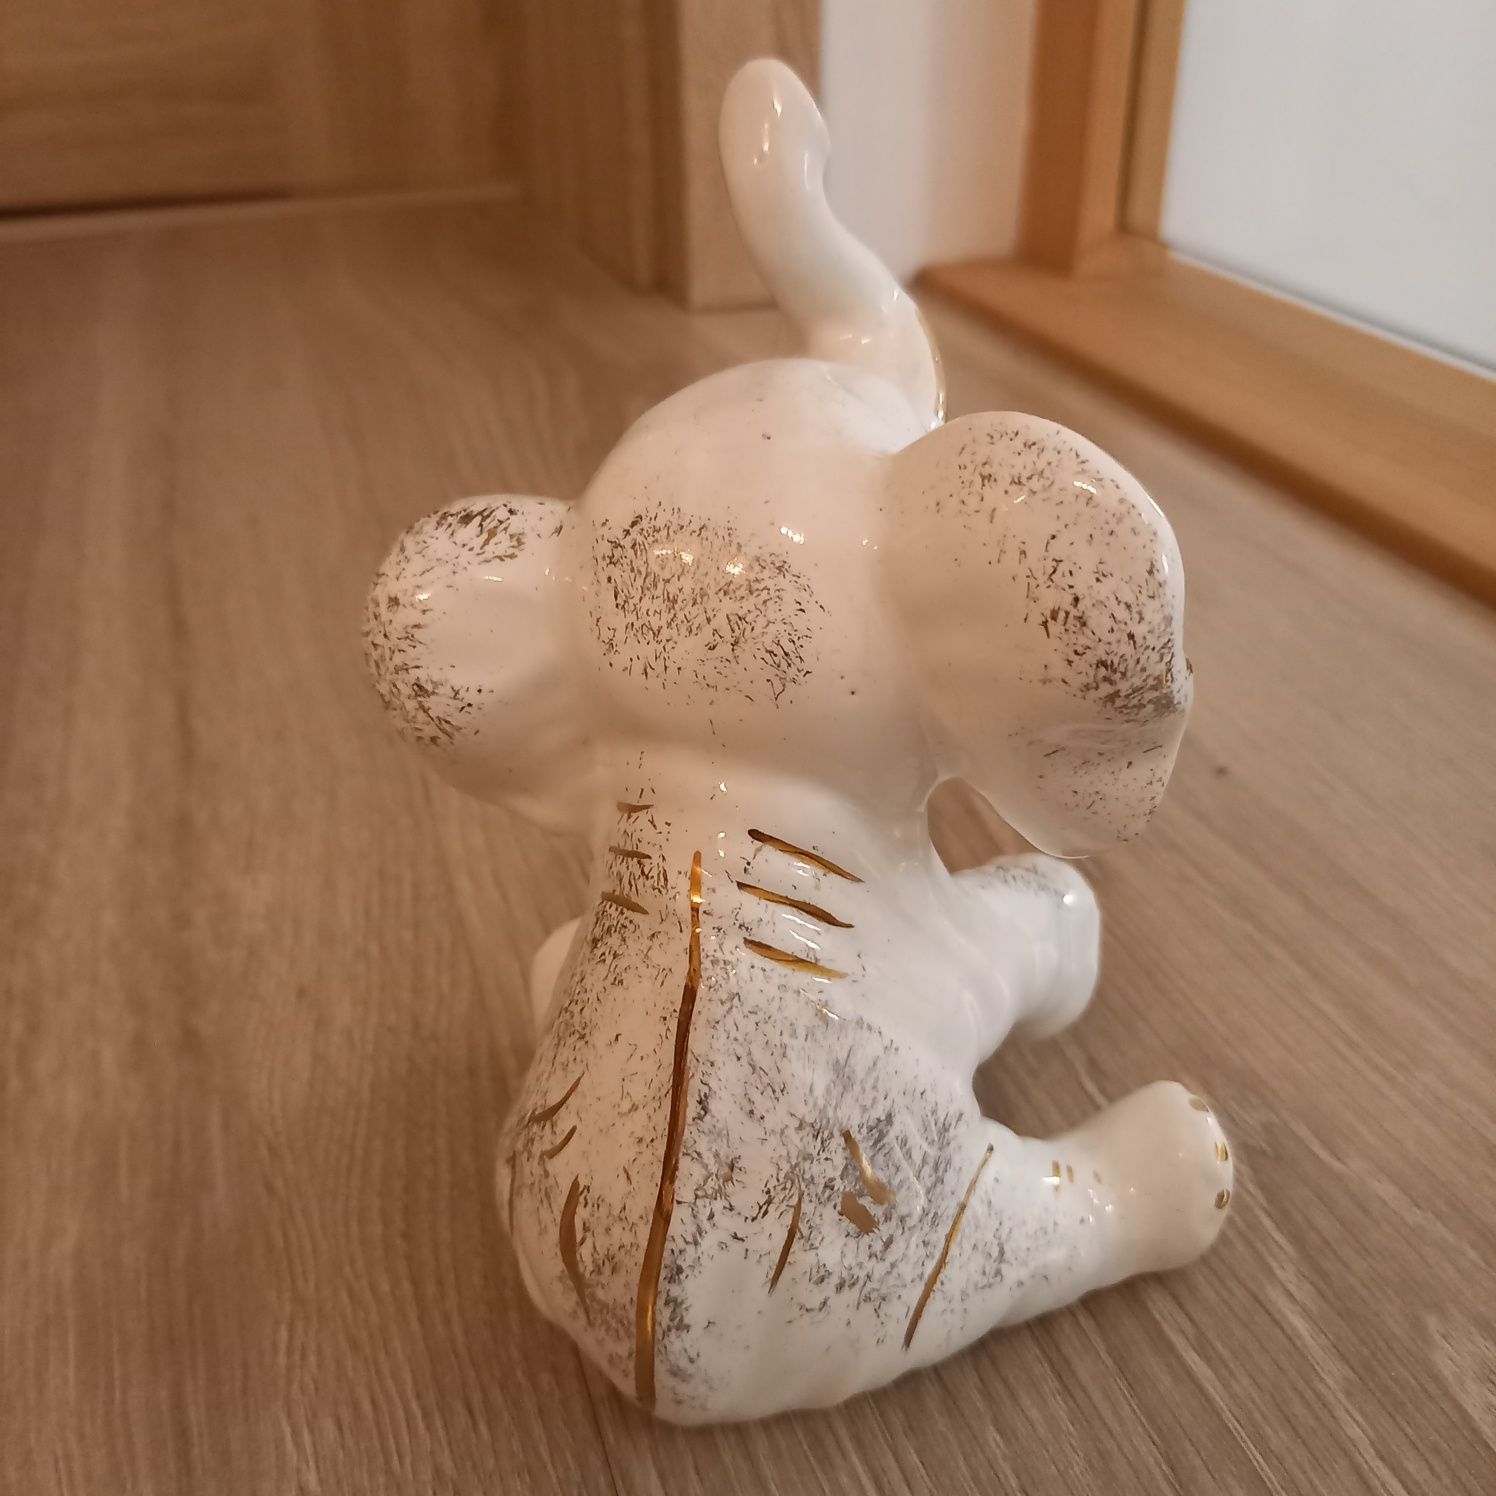 Figurka ceramiczna słoń